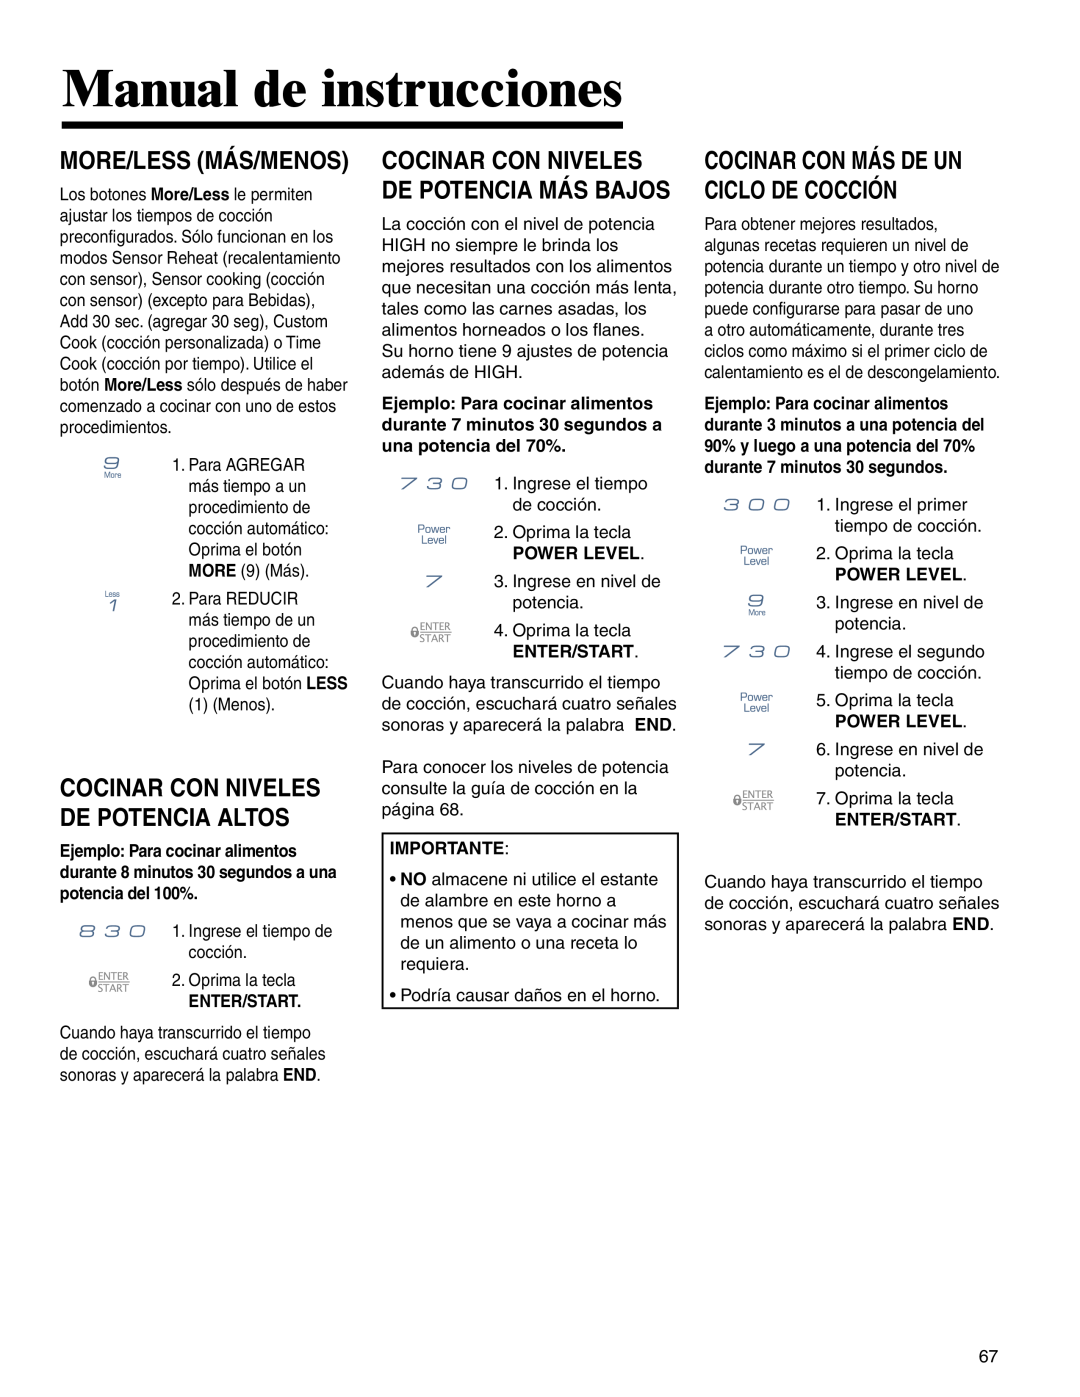 Maytag MMV4205BA Manual de instrucciones, More/Less Más/Menos, Cocinar Con Niveles De Potencia Altos 